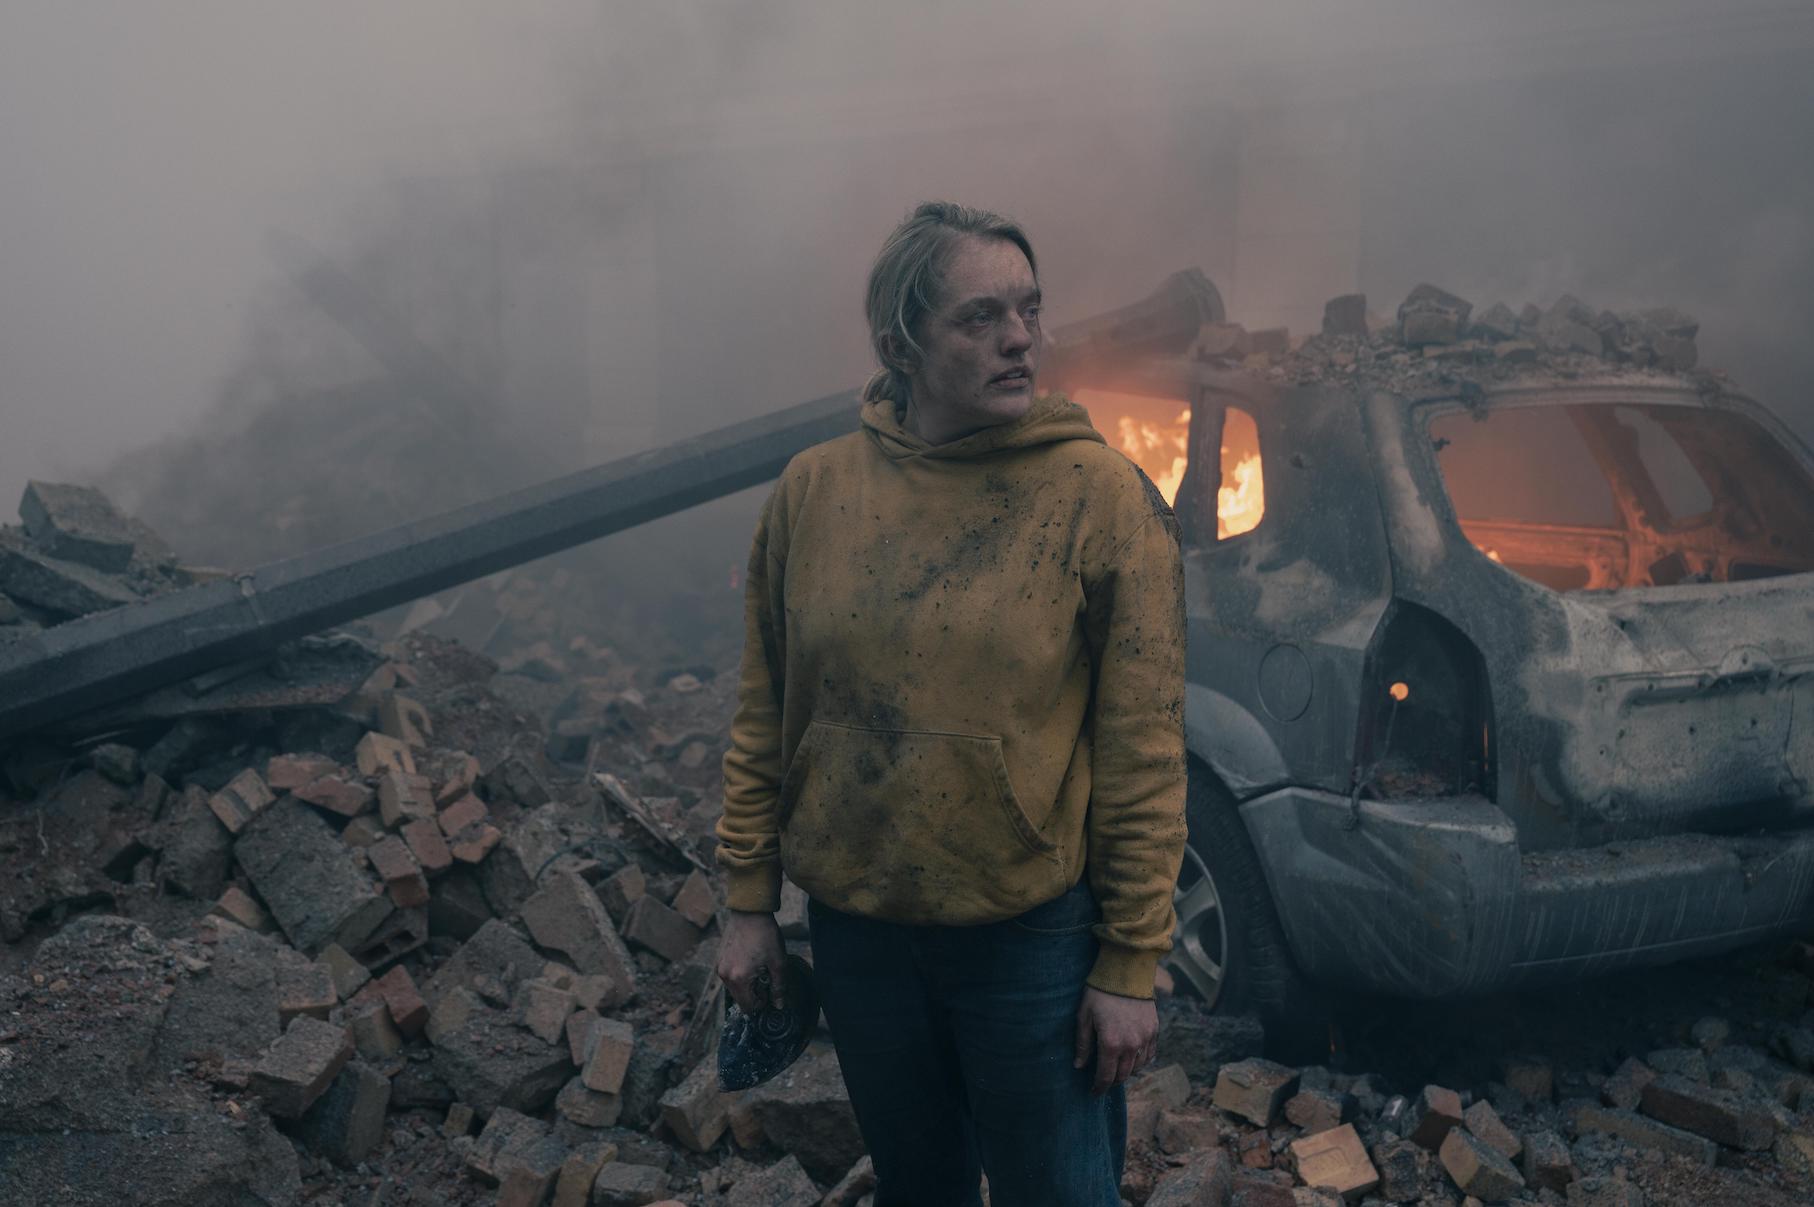 Elisabeth Moss as June Osborne in 'The Handmaid's Tale' Season 4 standing in rubble after a bombing